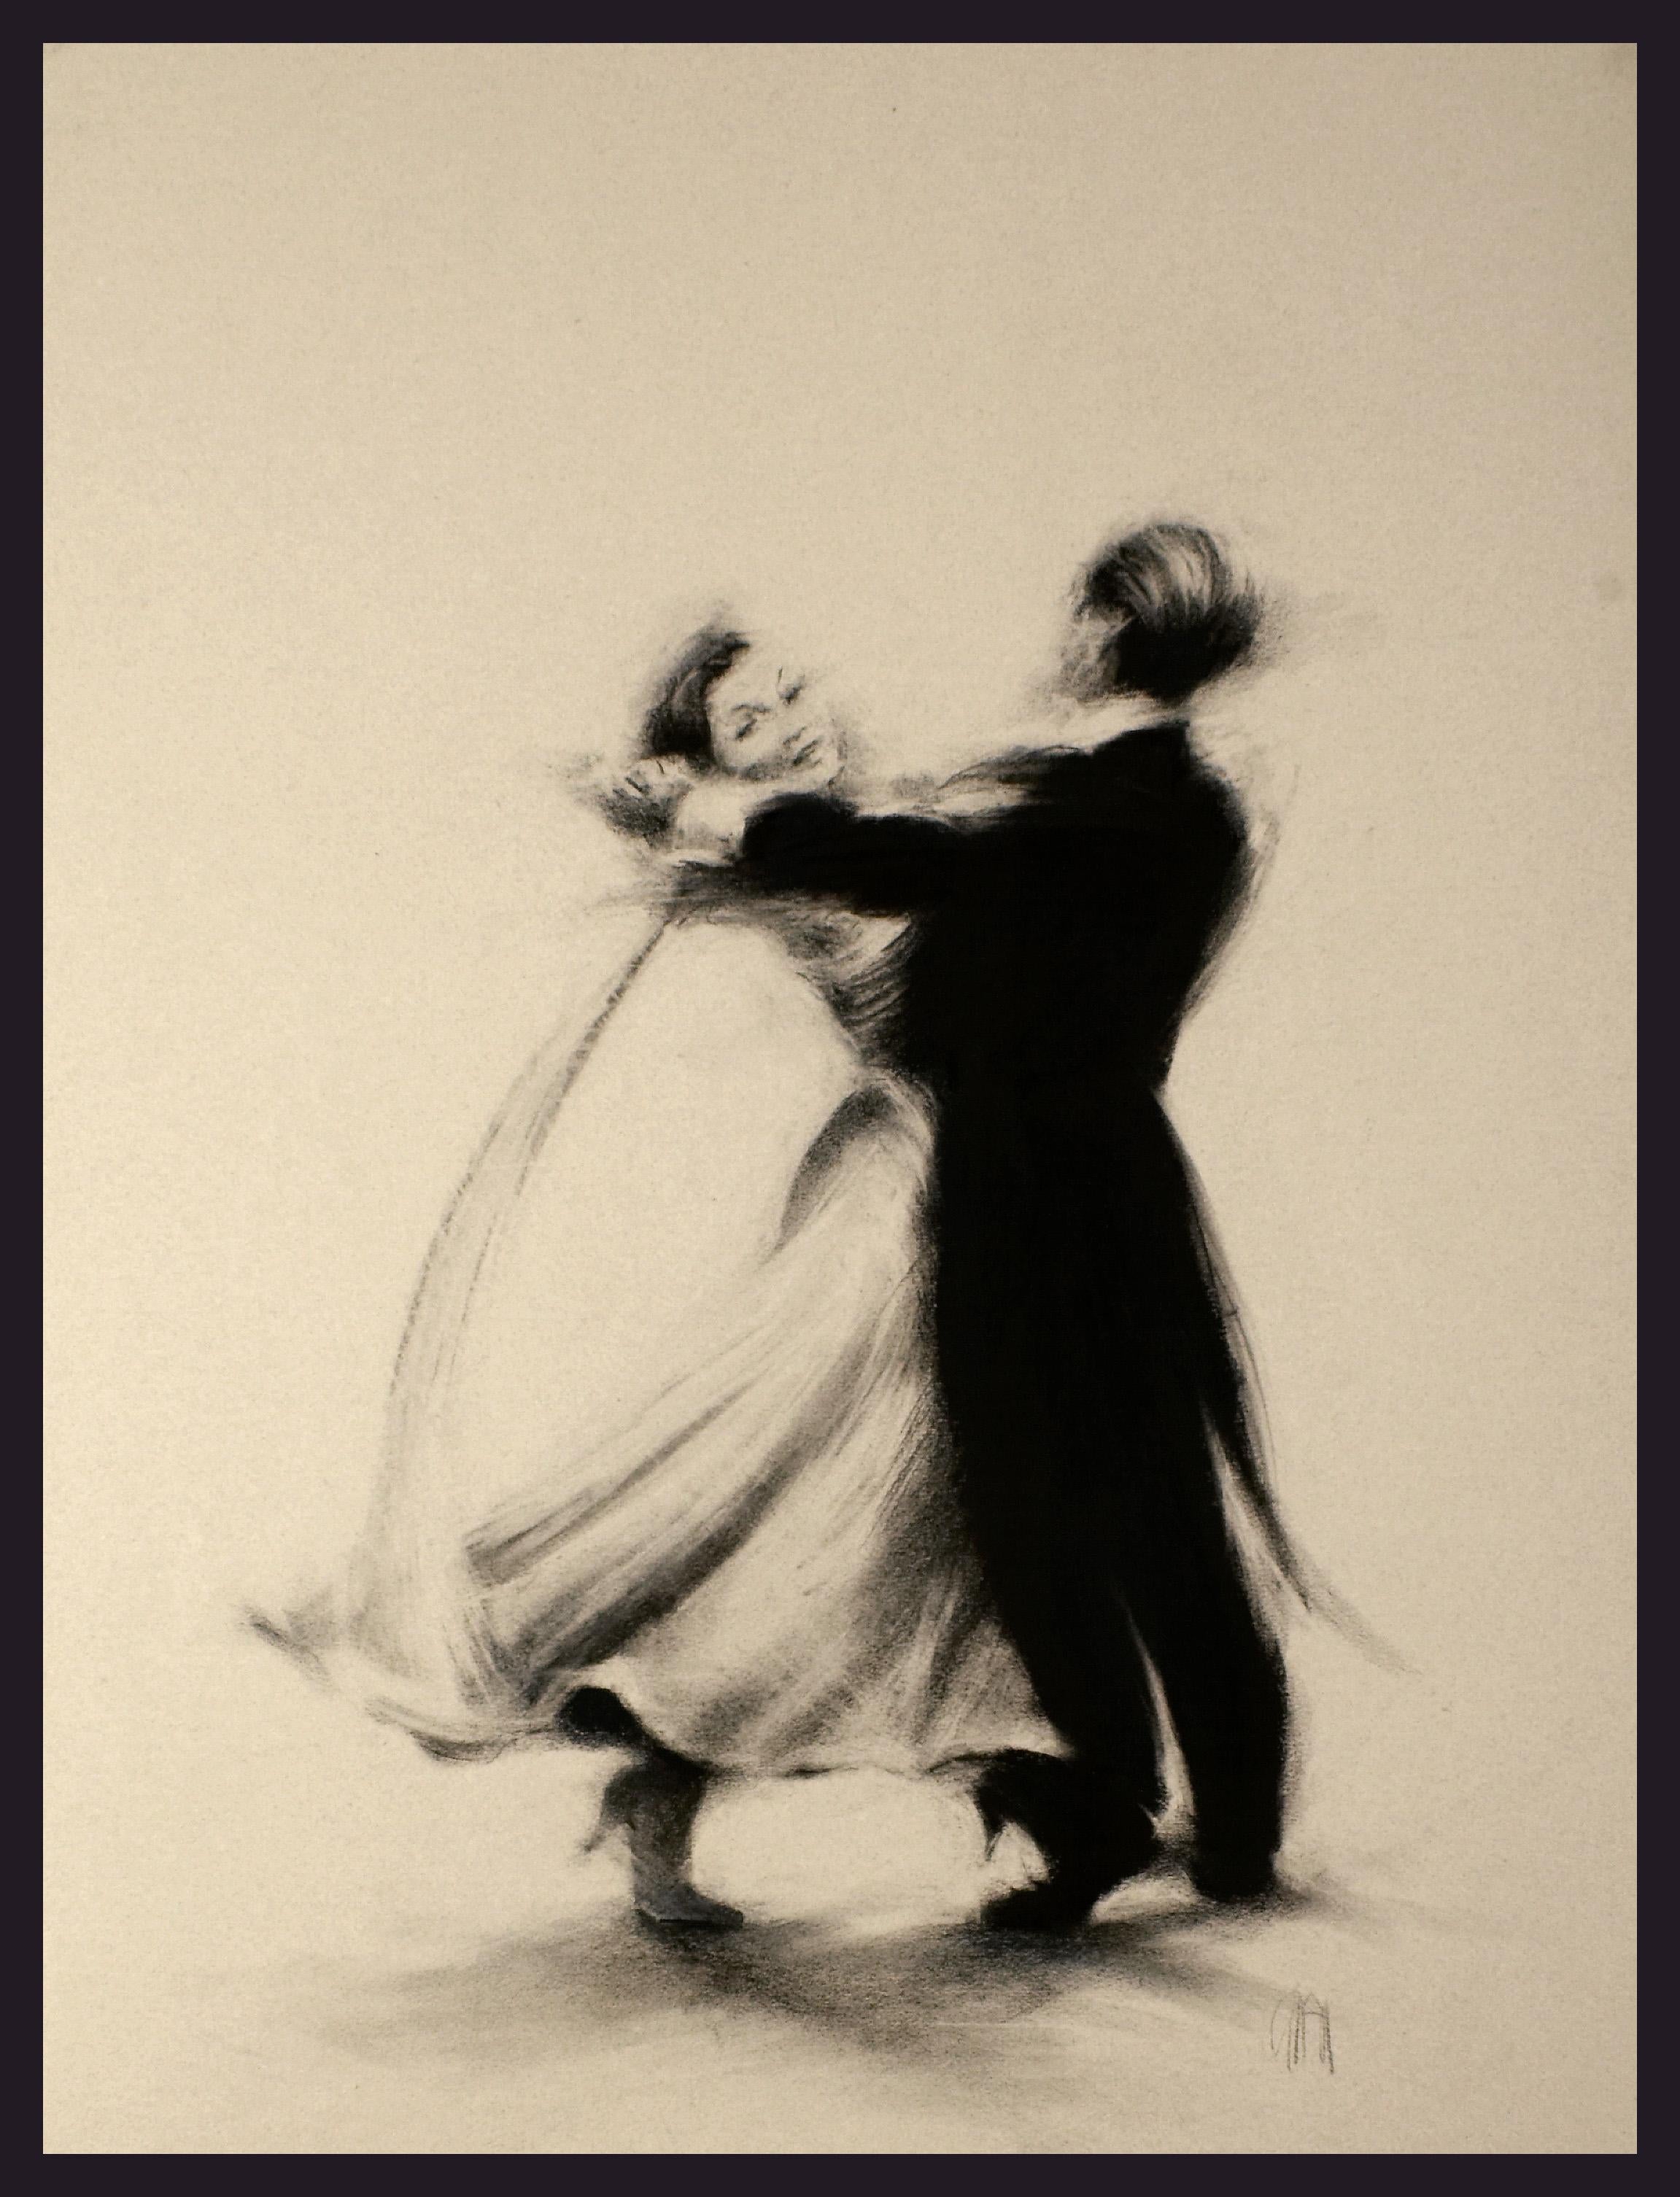 Ballroom-Tänzer II - Holzkohle, figürlich, Stoff, Bewegung, menschliche Form